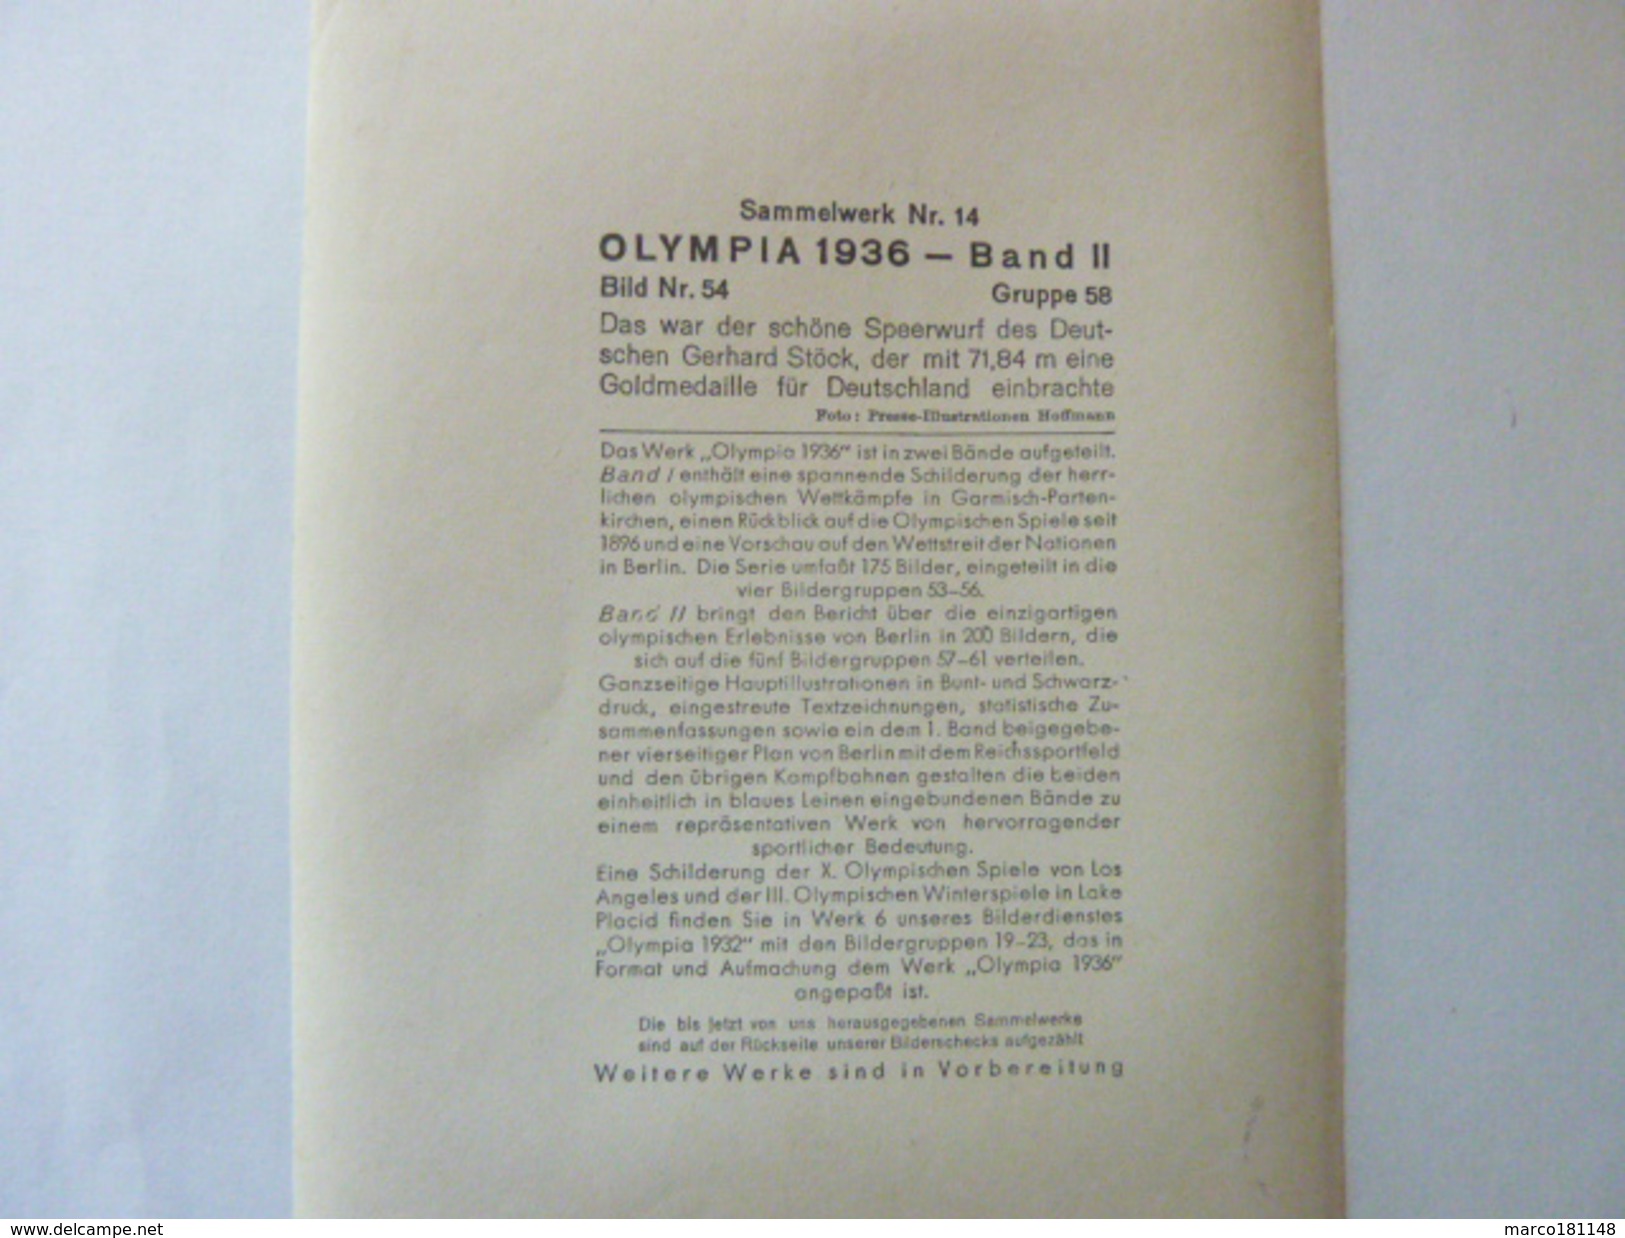 OLYMPIA 1936 - Band II - Bild Nr 54 Gruppe 58 - Gerhard Stöck Au Javelot - Sport